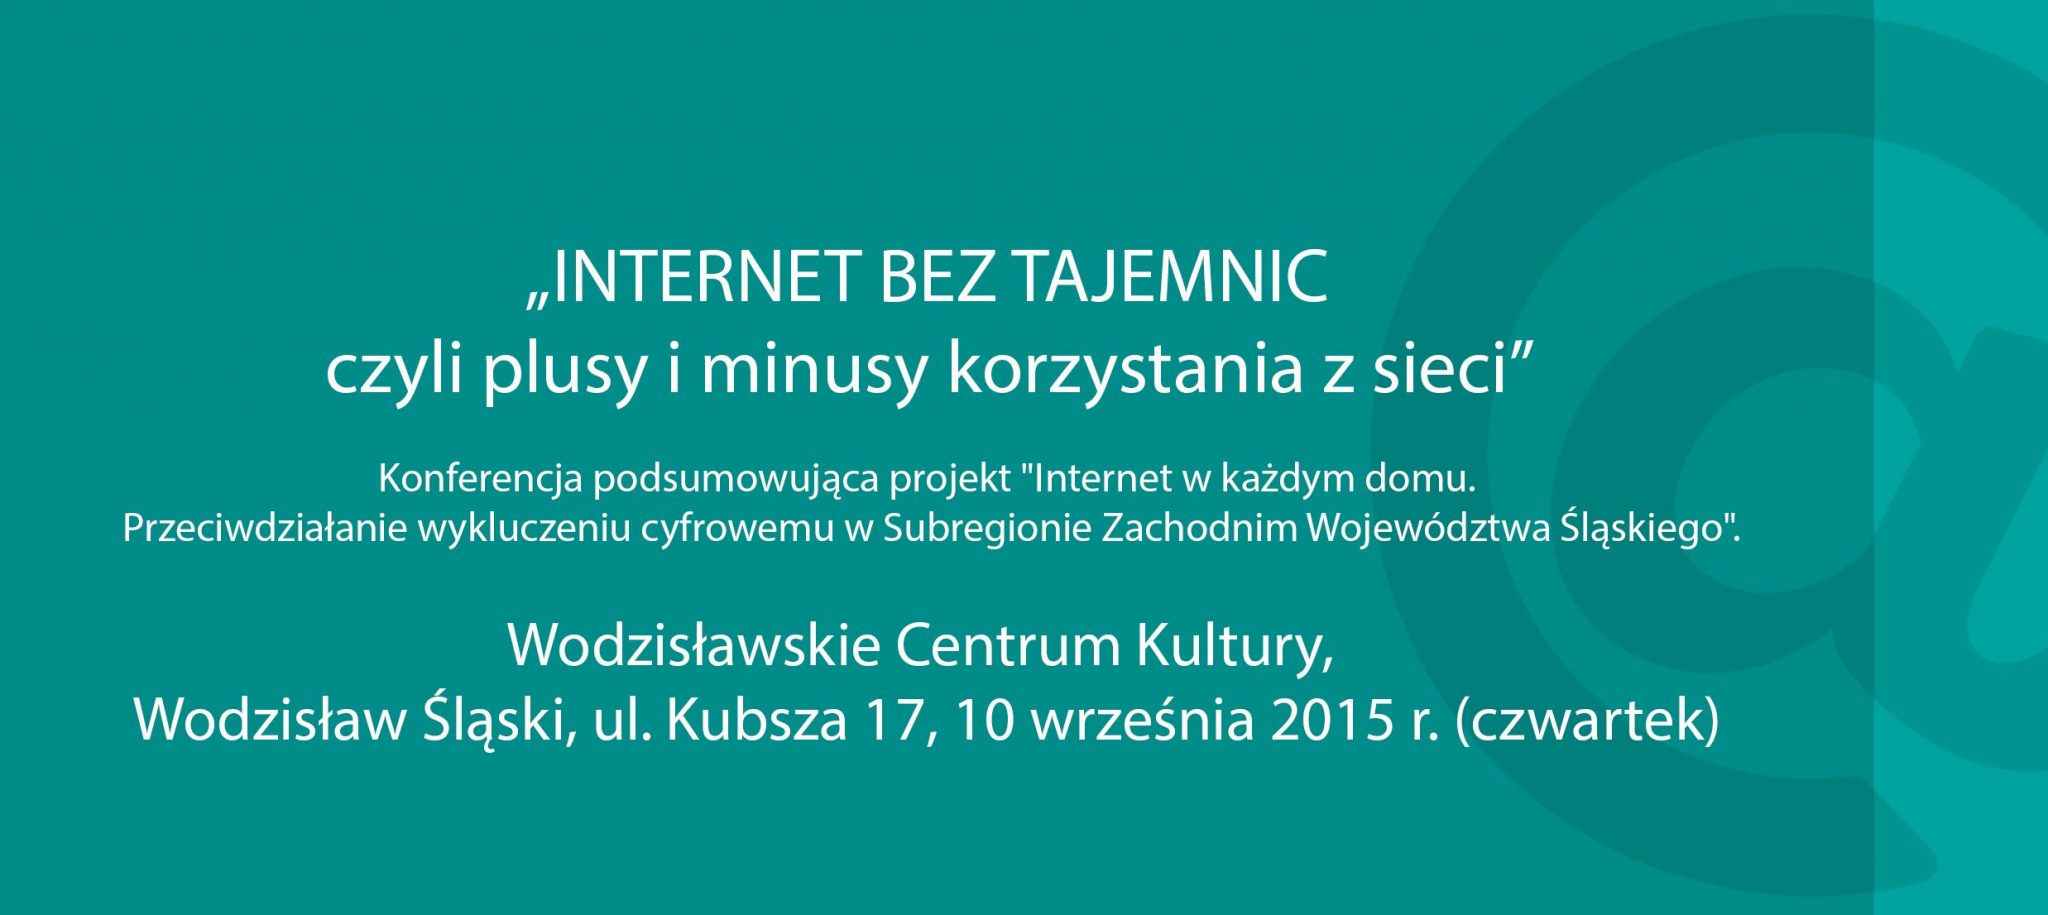 Konferencja podsumowująca projekt „Internet w każdym domu....”